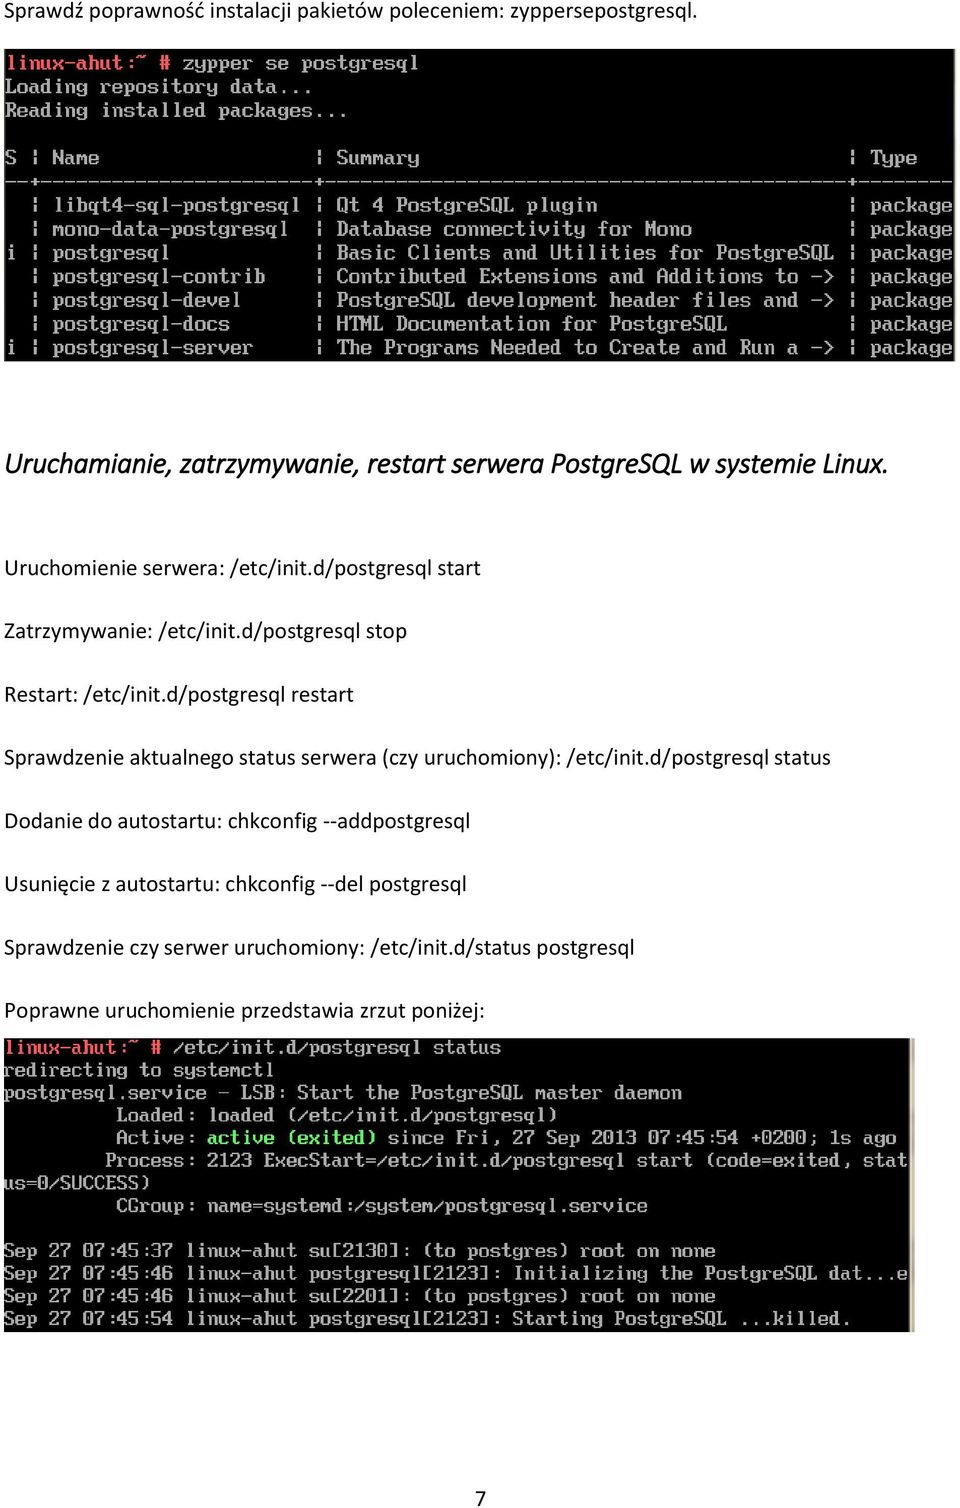 d/postgresql restart Sprawdzenie aktualnego status serwera (czy uruchomiony): /etc/init.